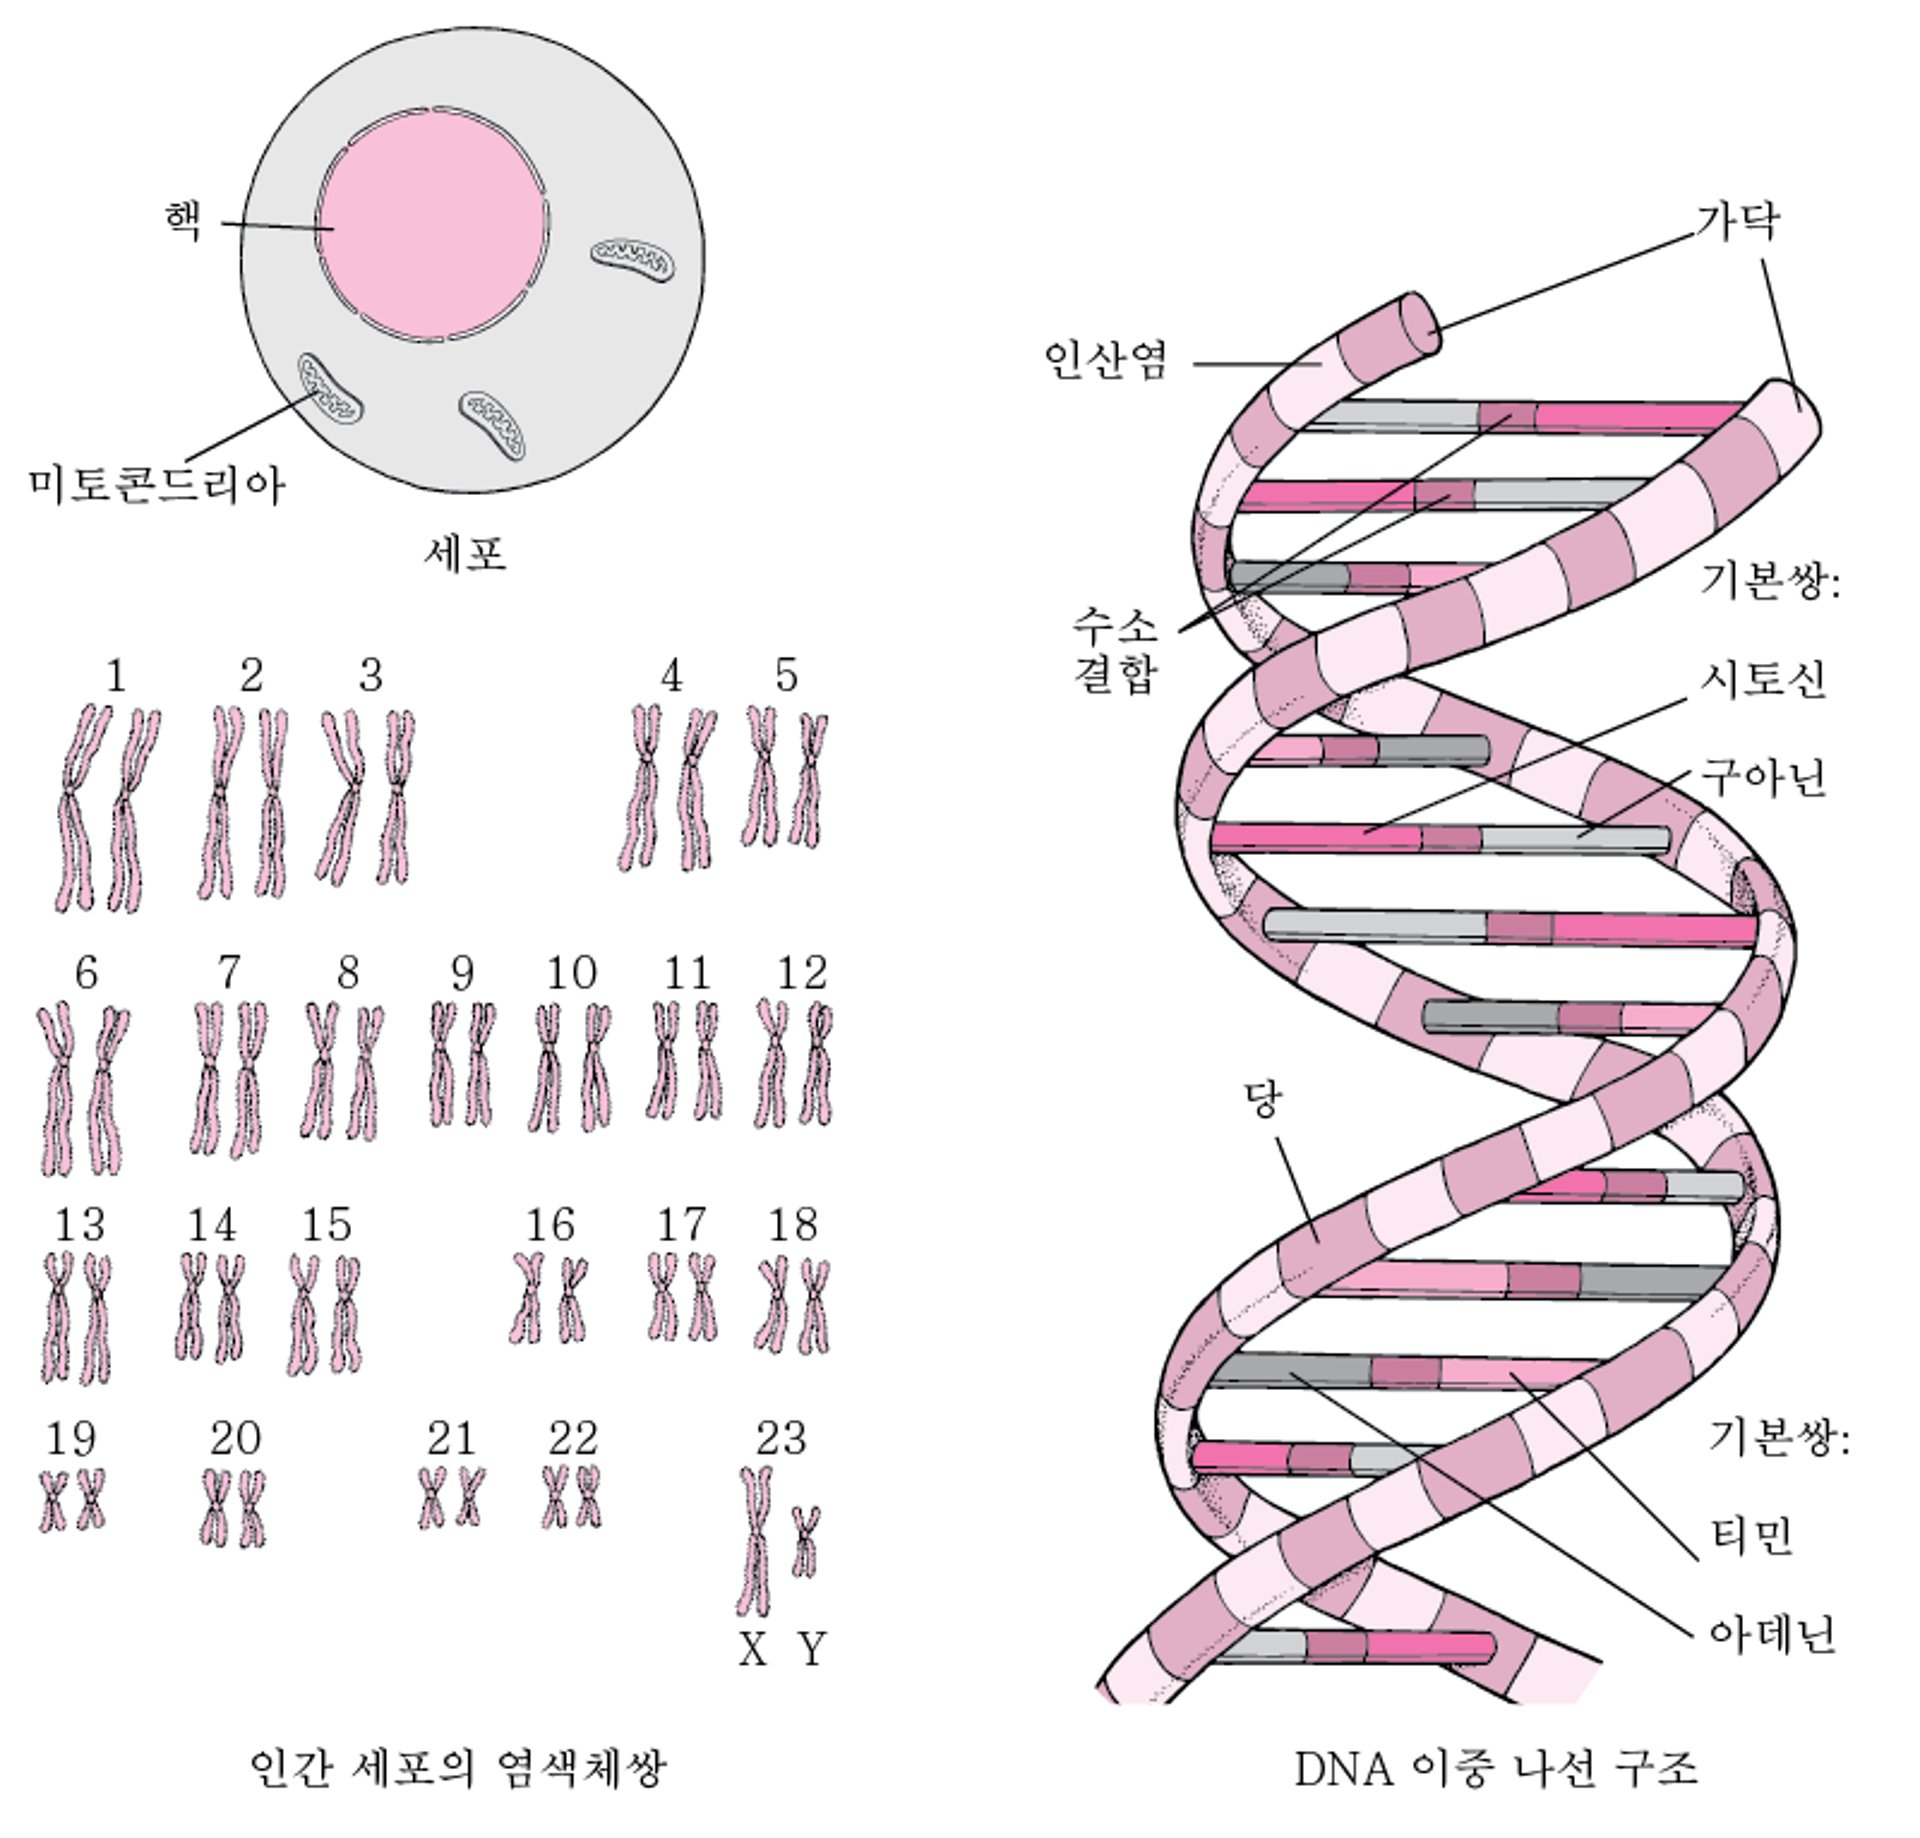 DNA의 구조